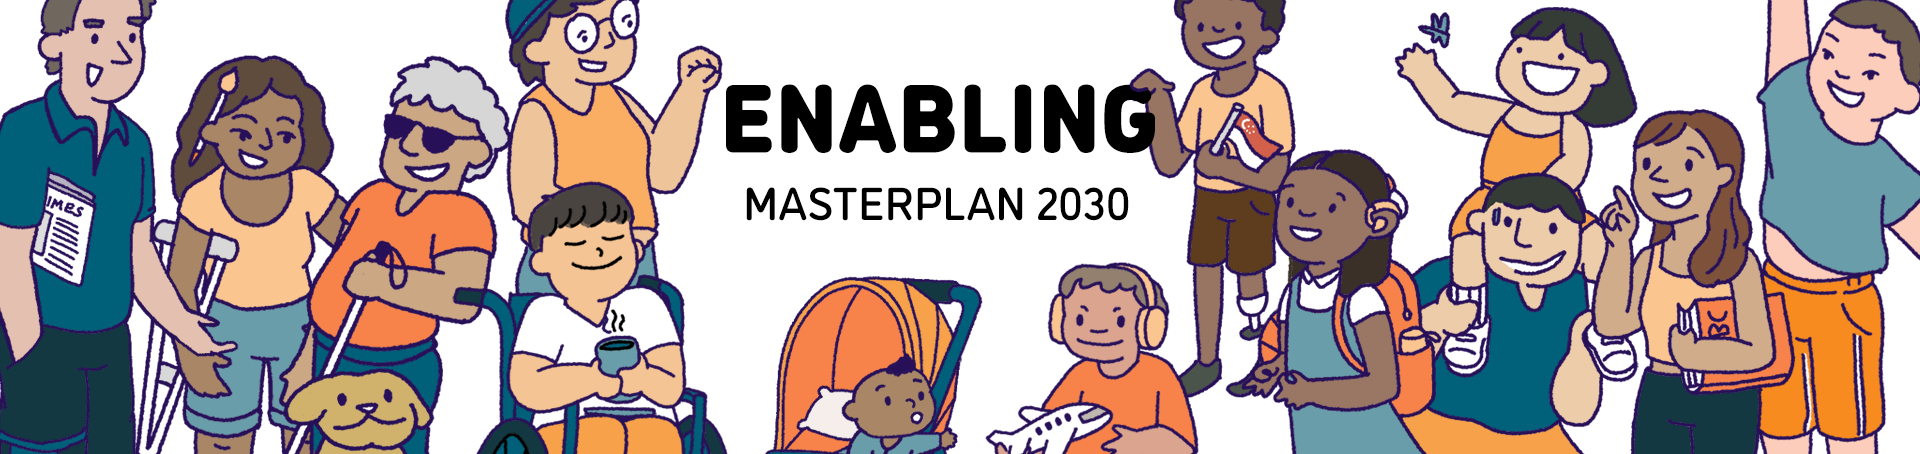 Enabling Masterplan 2030